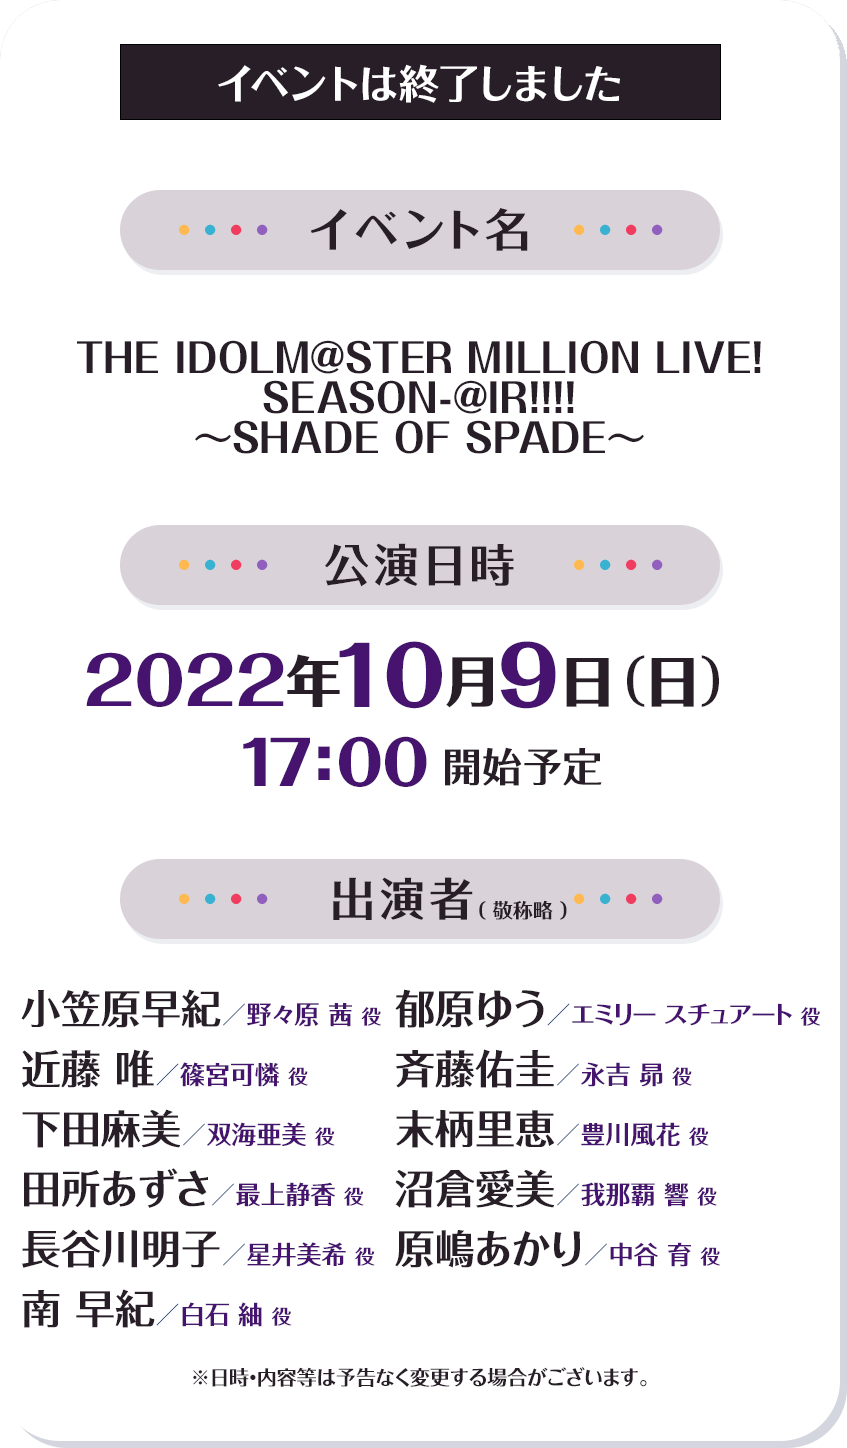 THE IDOLM@STER MILLION LIVE! SEASON-@IR!!!! ～SHADE OF SPADE～イベント概要 イベントは終了しました